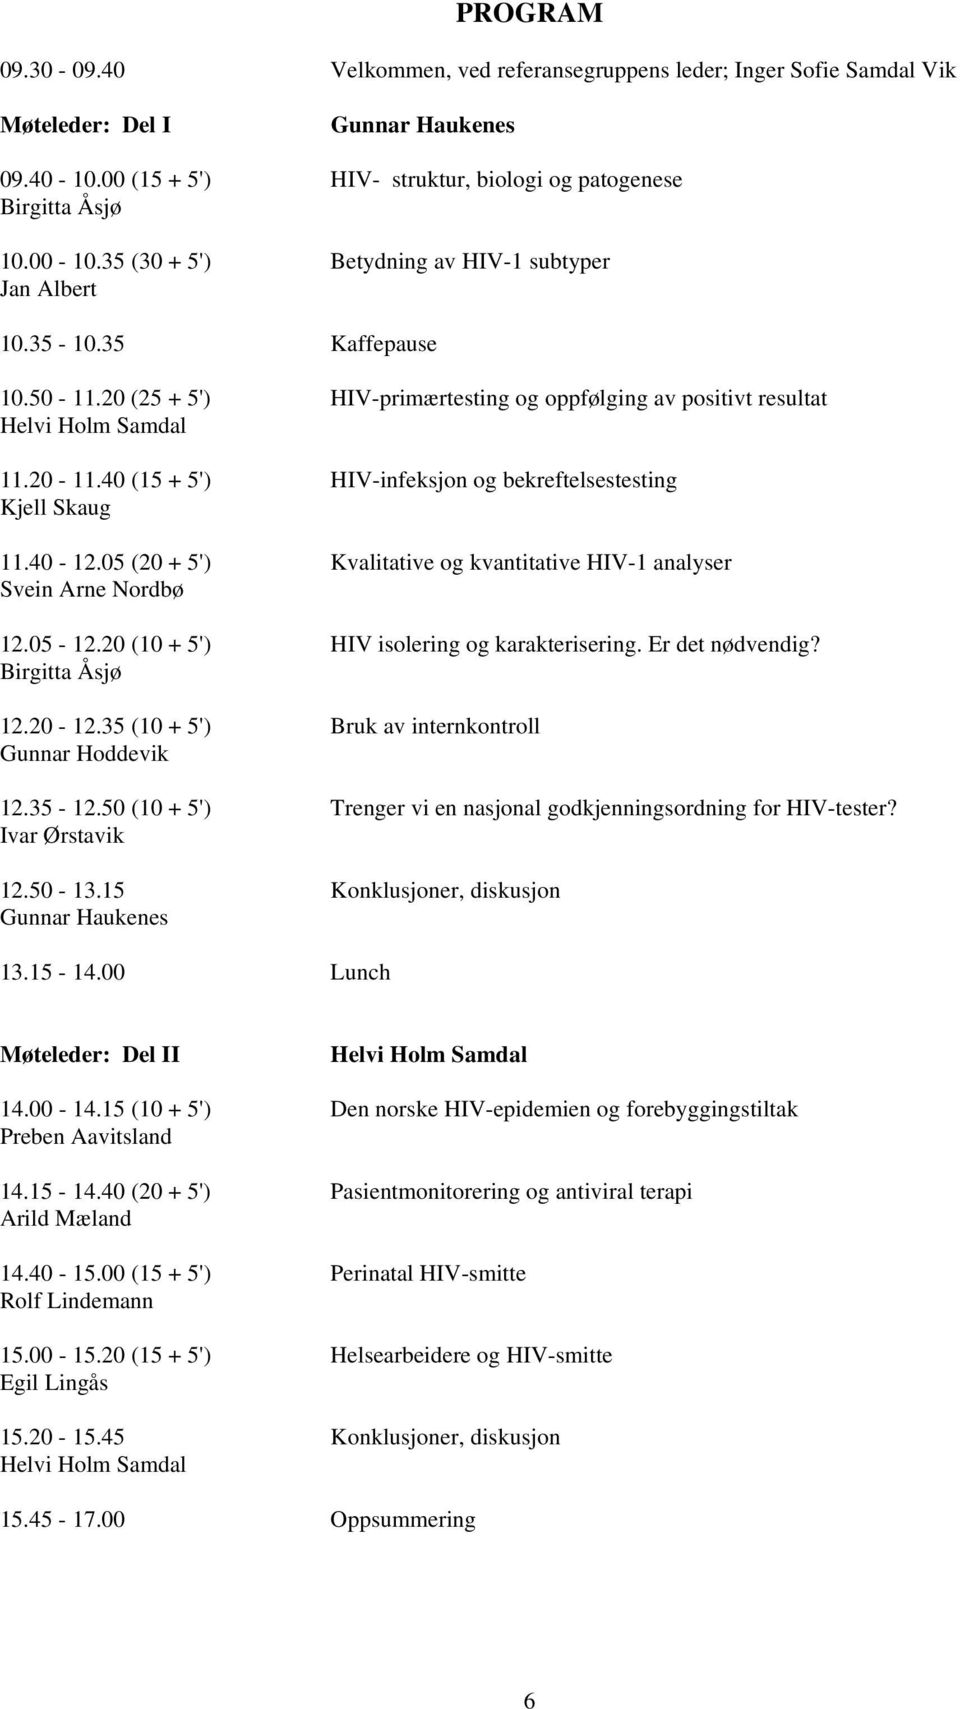 40 (15 + 5') HIV-infeksjon og bekreftelsestesting Kjell Skaug 11.40-12.05 (20 + 5') Kvalitative og kvantitative HIV-1 analyser Svein Arne Nordbø 12.05-12.20 (10 + 5') HIV isolering og karakterisering.